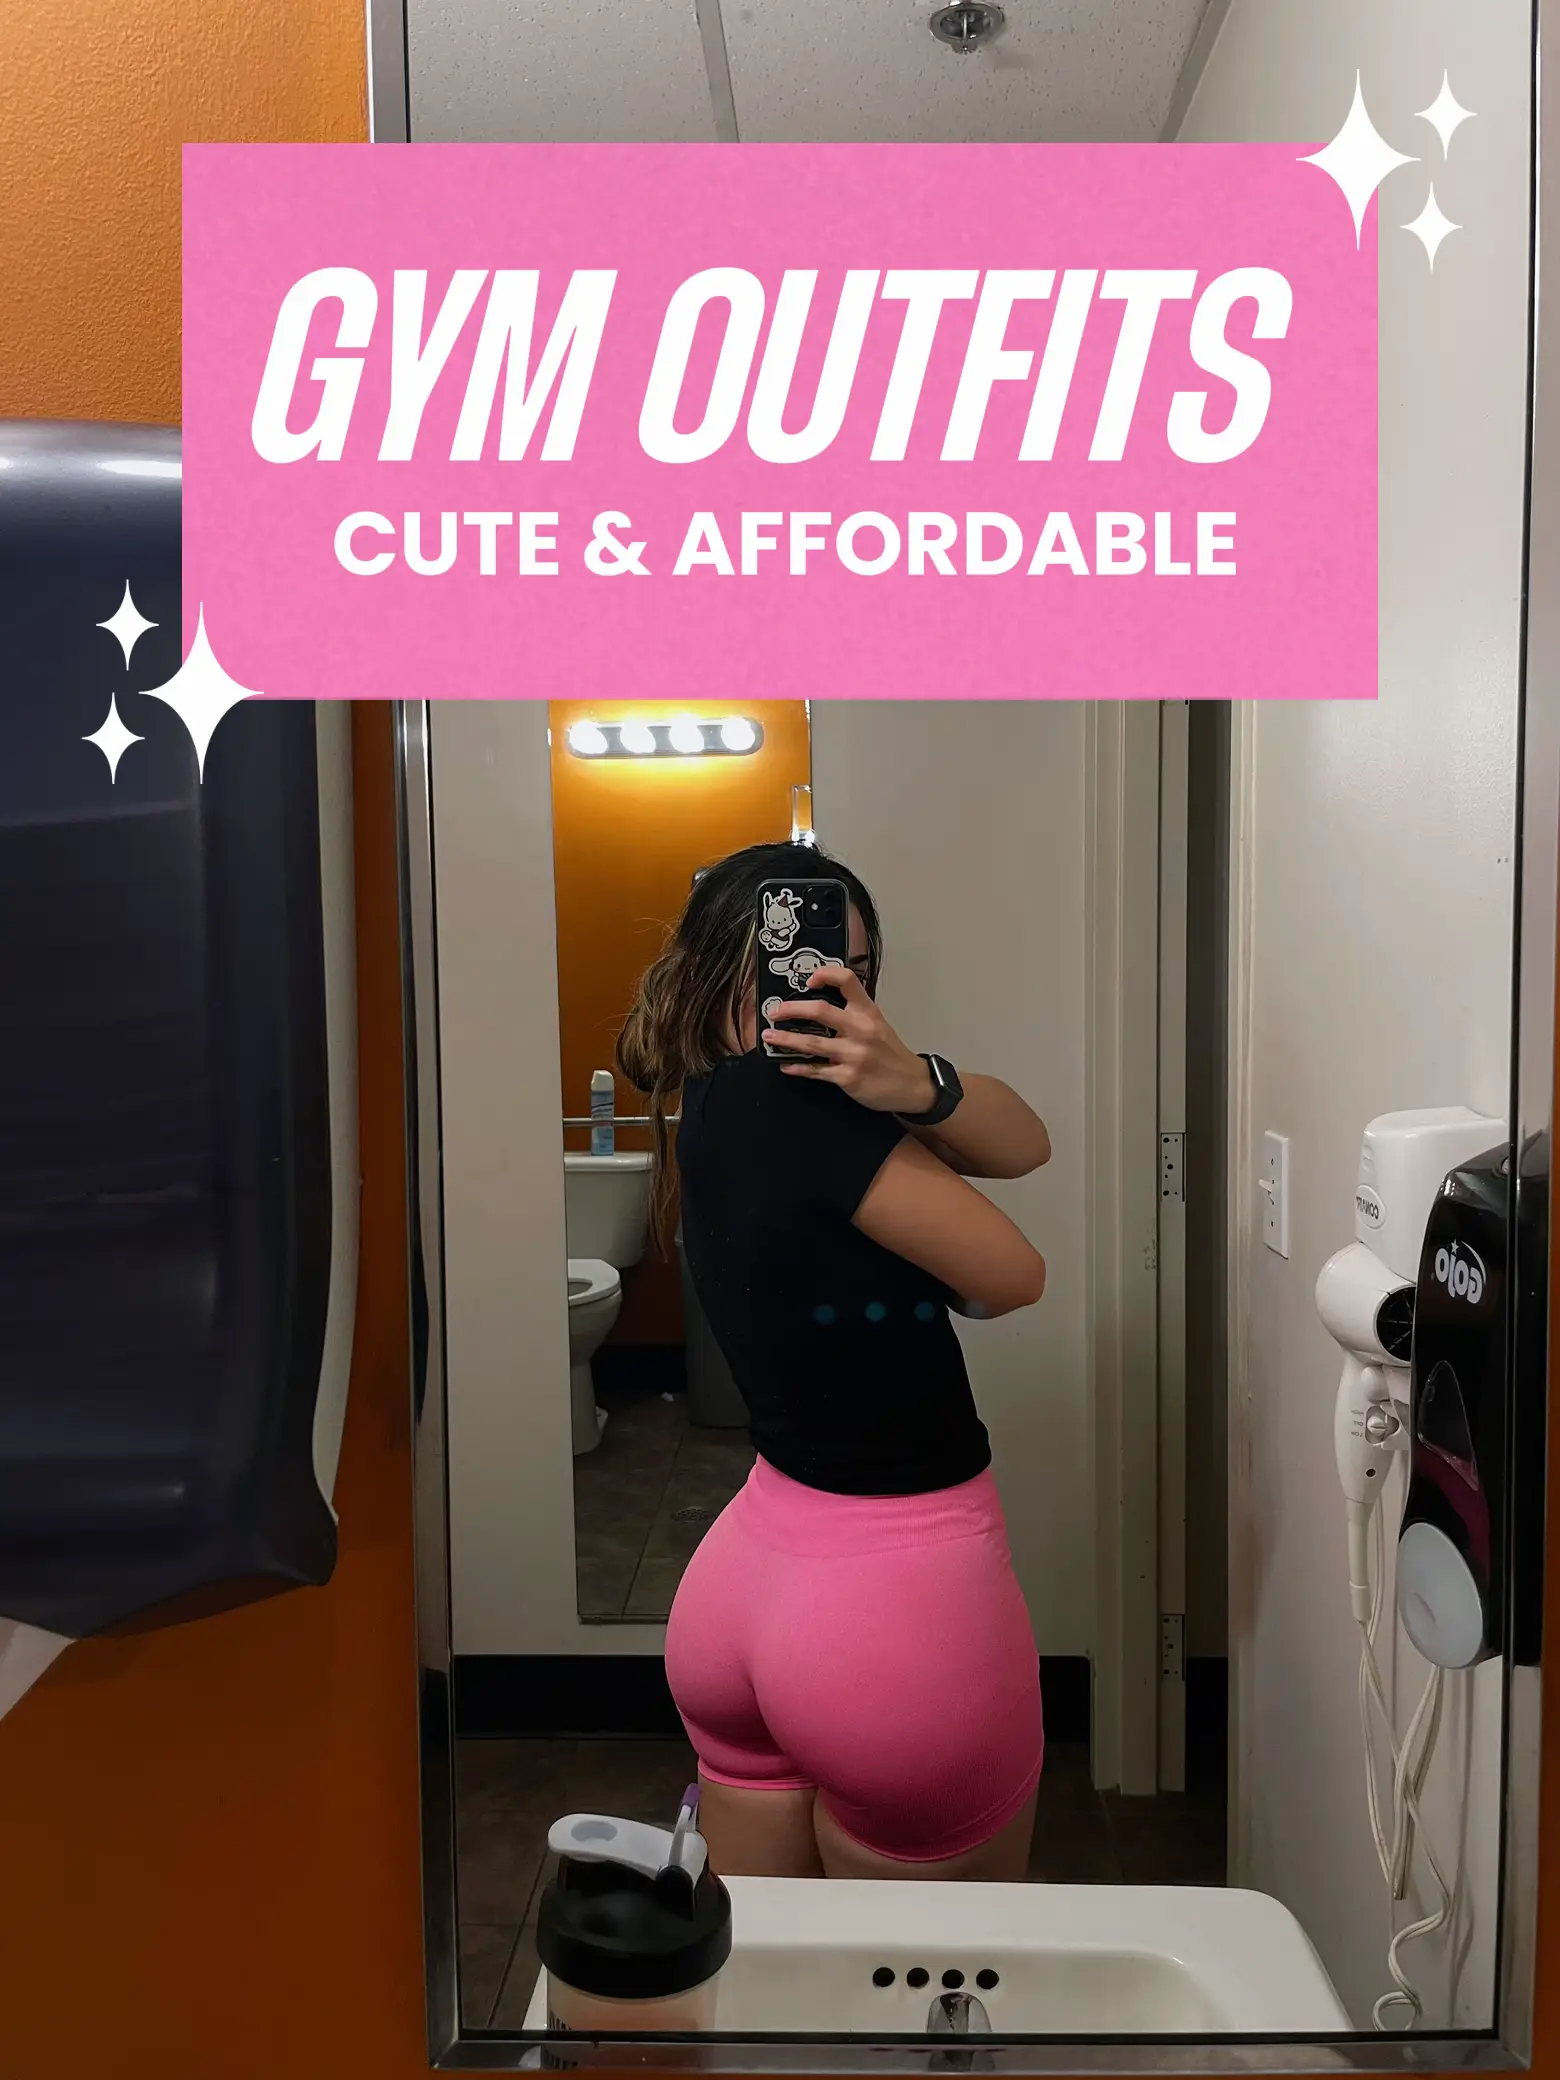 womens gym wear - Lemon8 Search